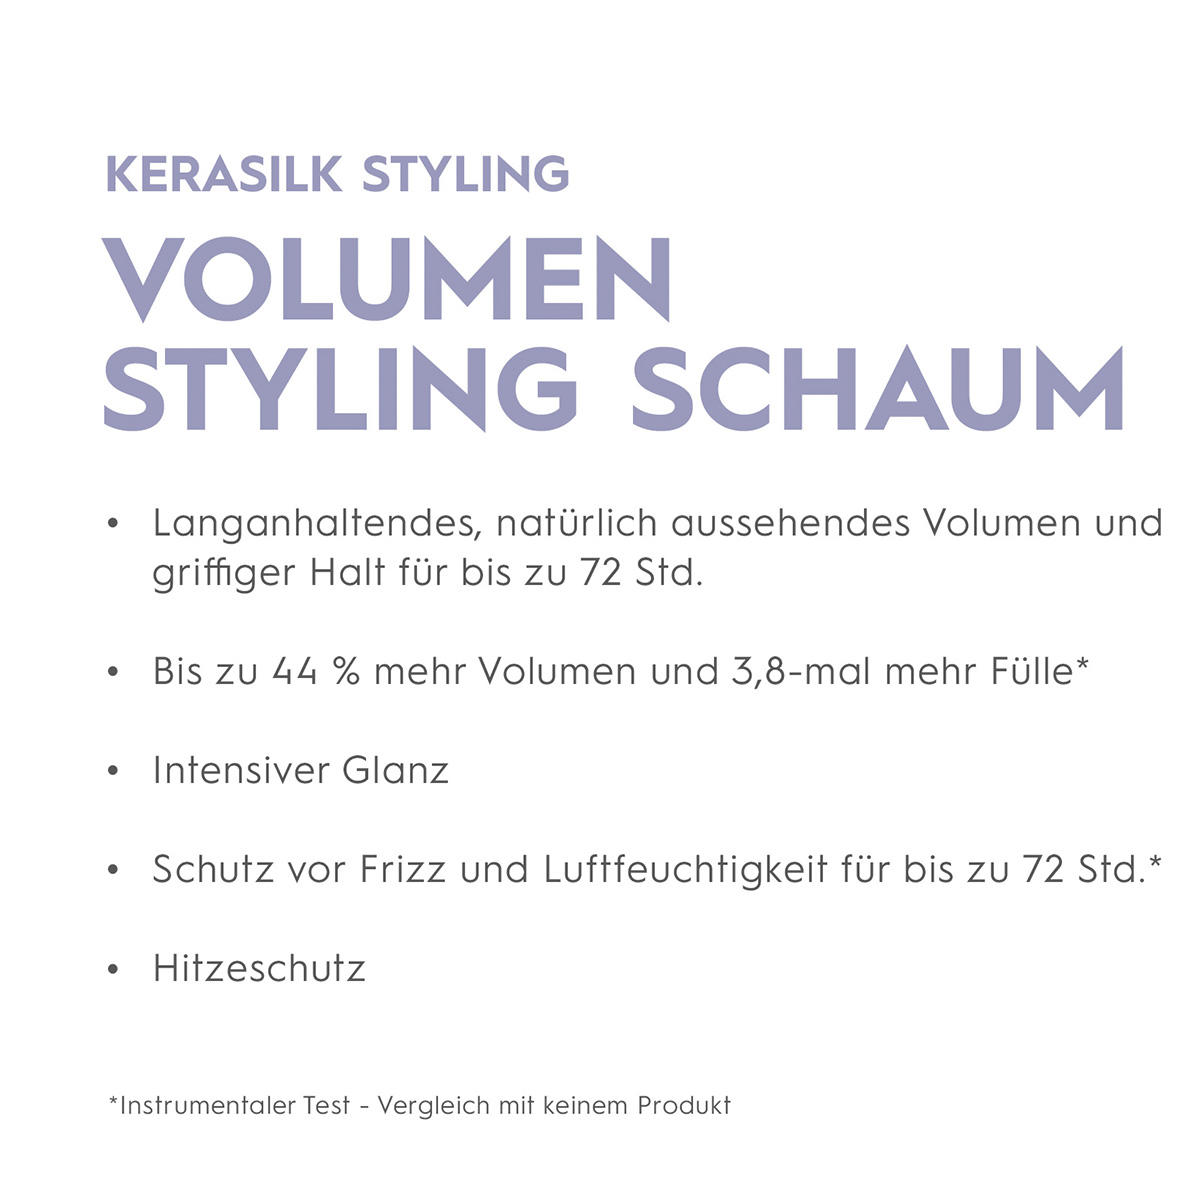 KERASILK Volume styling foam 150 ml - 3